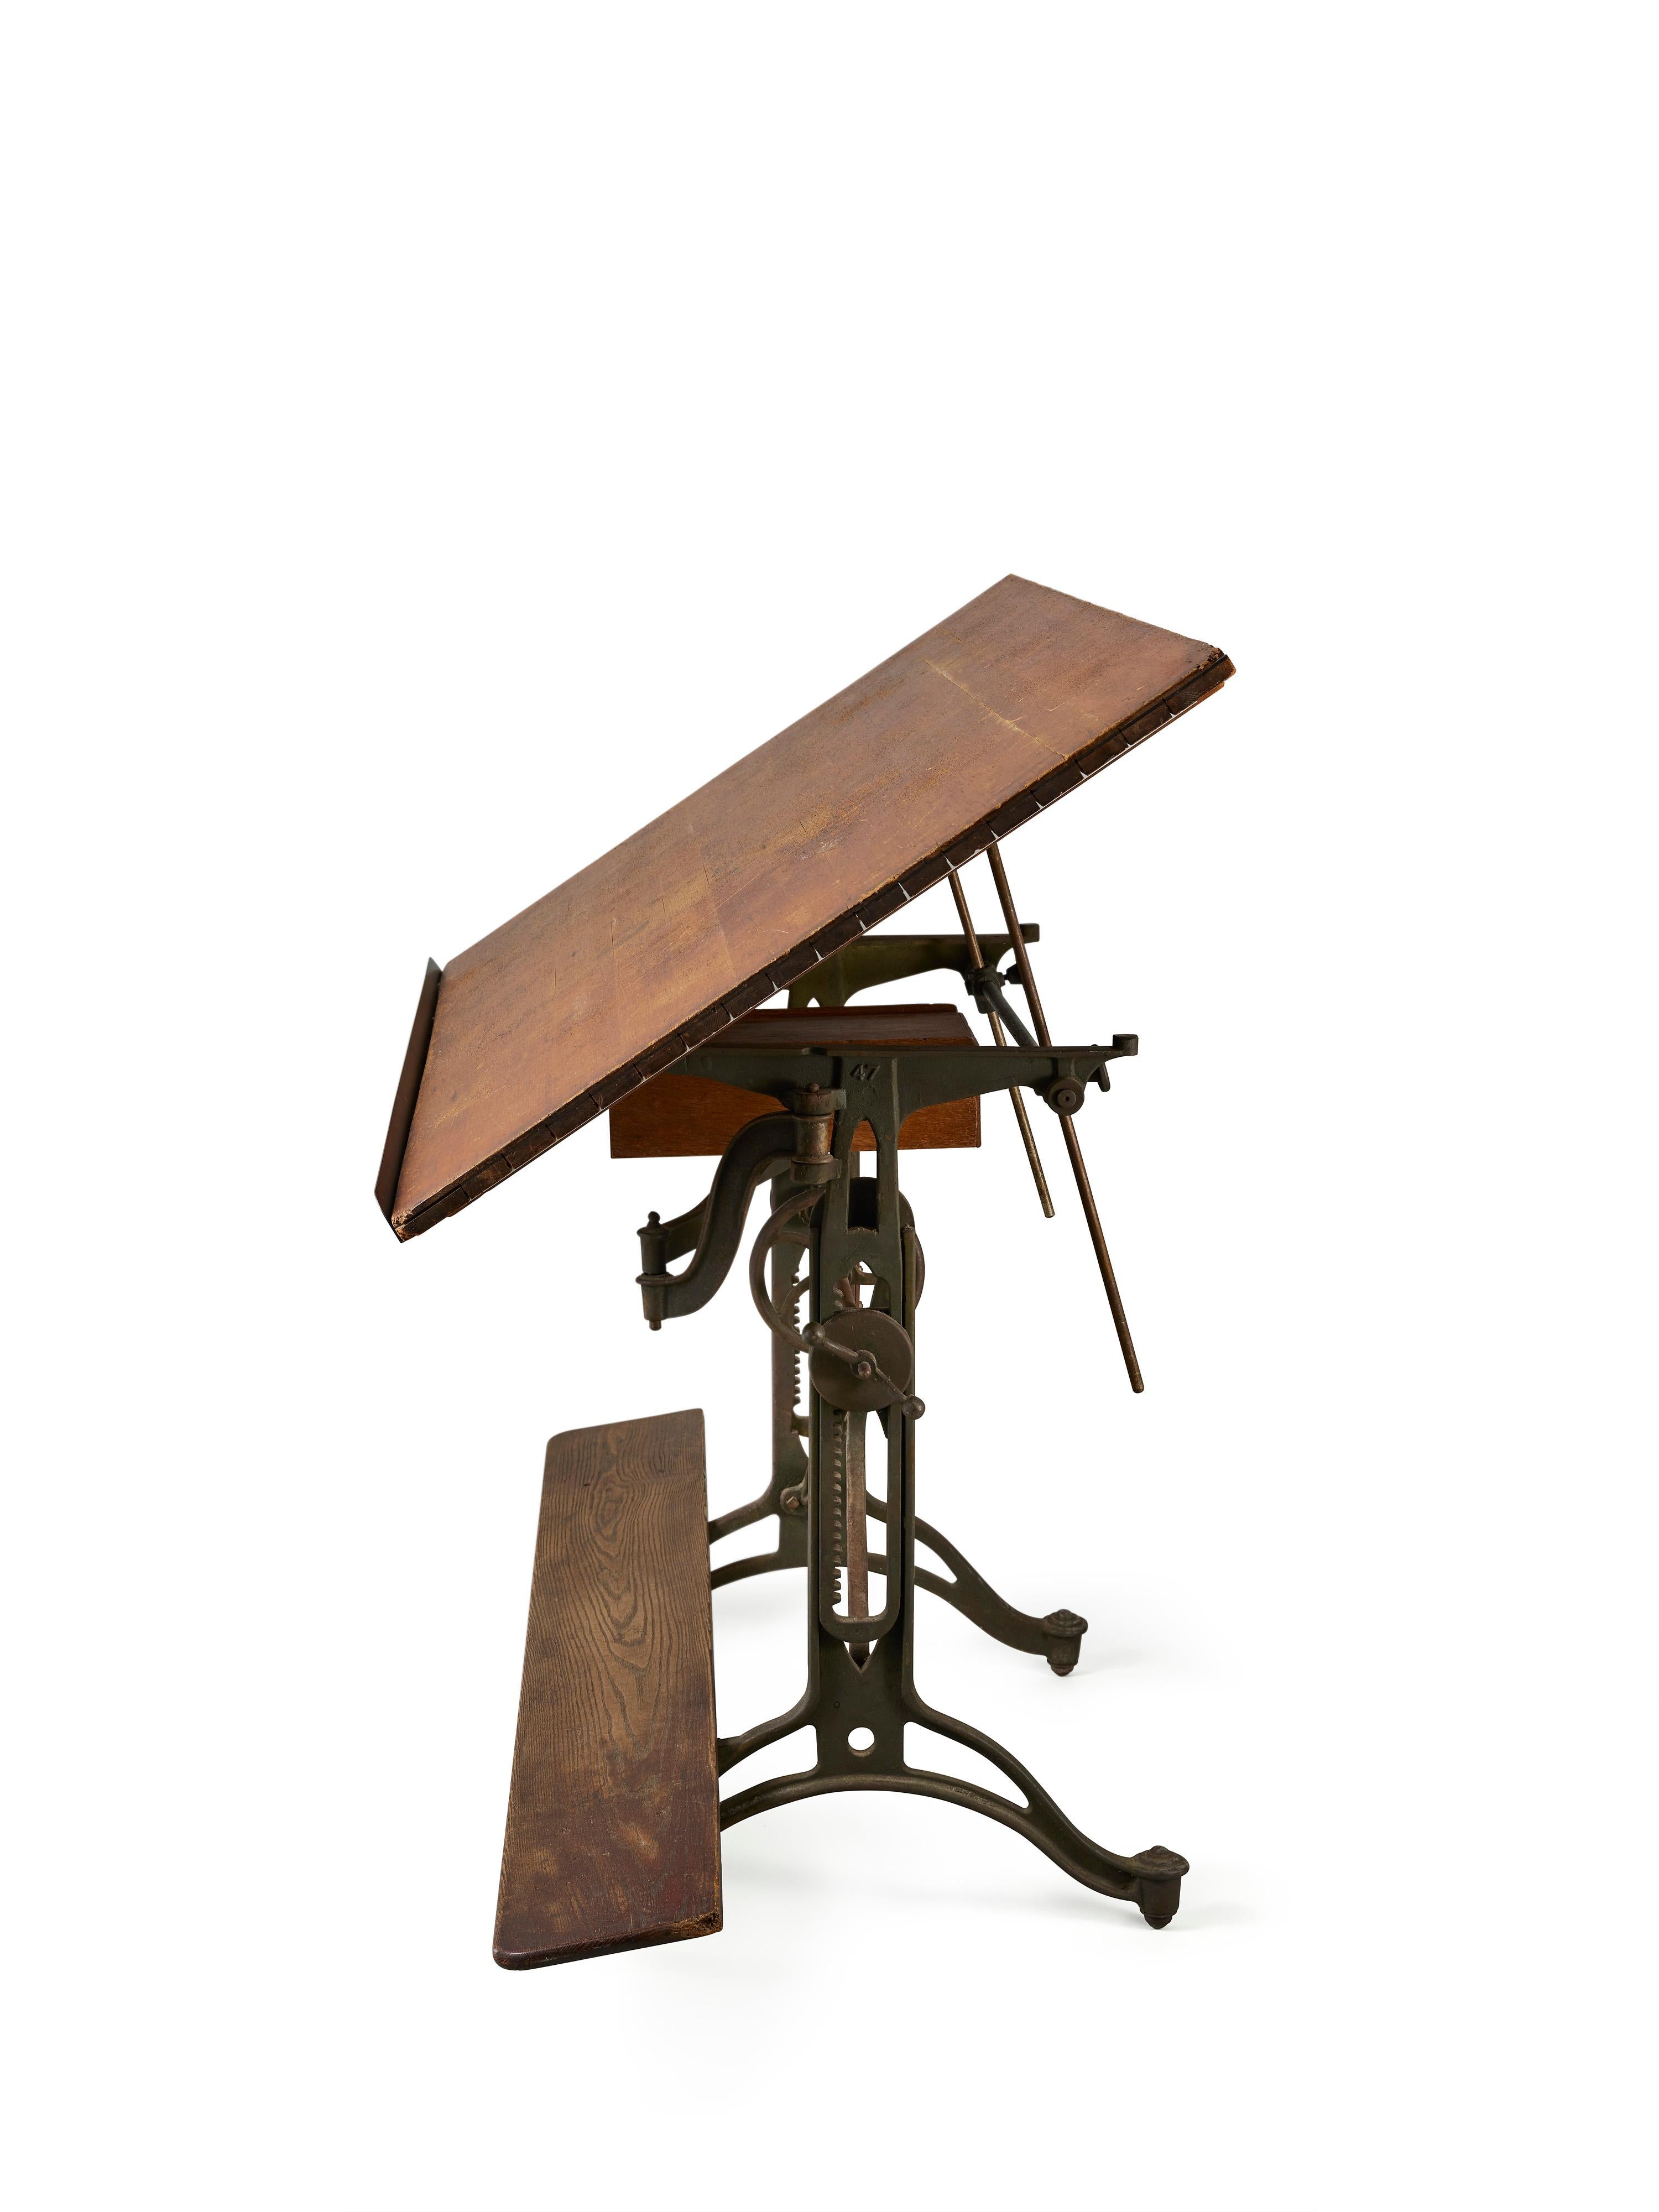 Cette impressionnante table à dessin est dotée d'une base en fer en forme de X caractéristique, parfaite pour être utilisée comme bureau debout ou table à manger traditionnelle. Son plateau en chêne d'origine, refini avec des extrémités en planche à